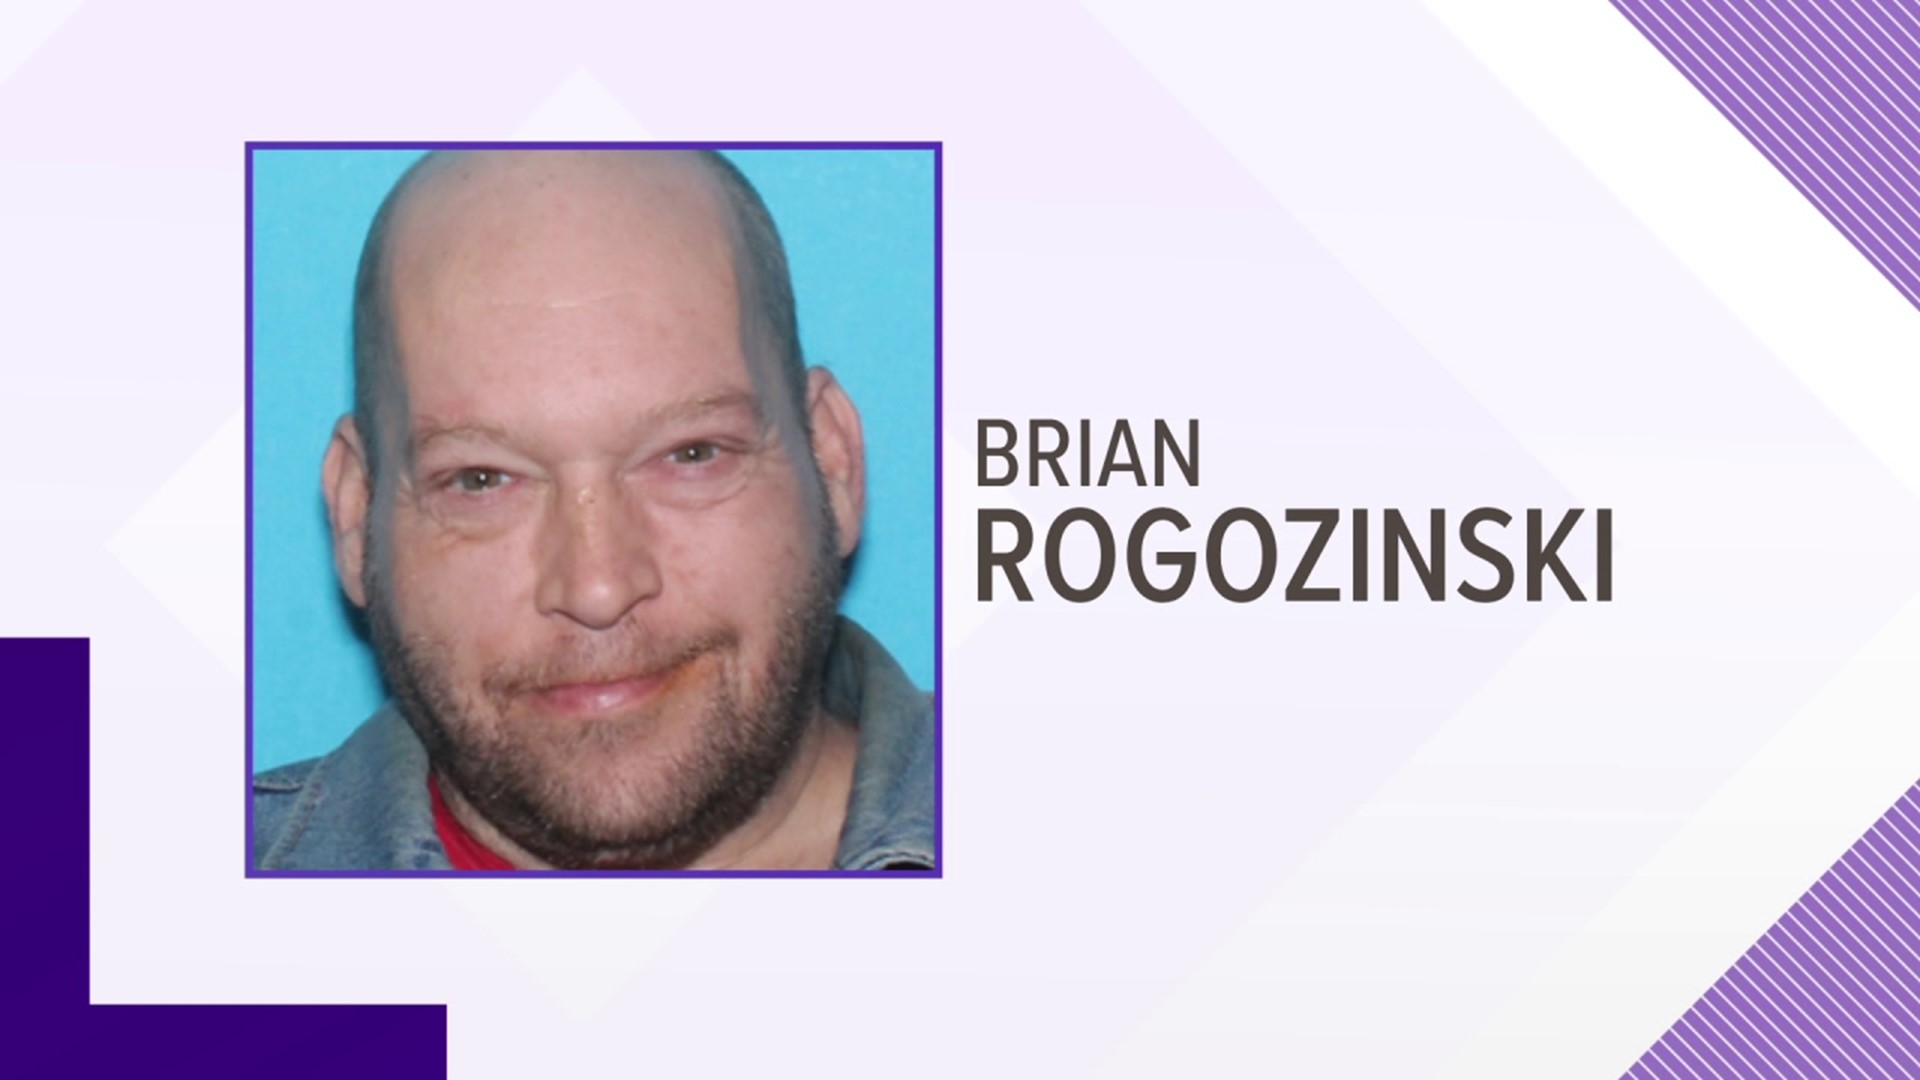 49-year-old Brian Rogozinski was last seen on August 10 in West Nanticoke.